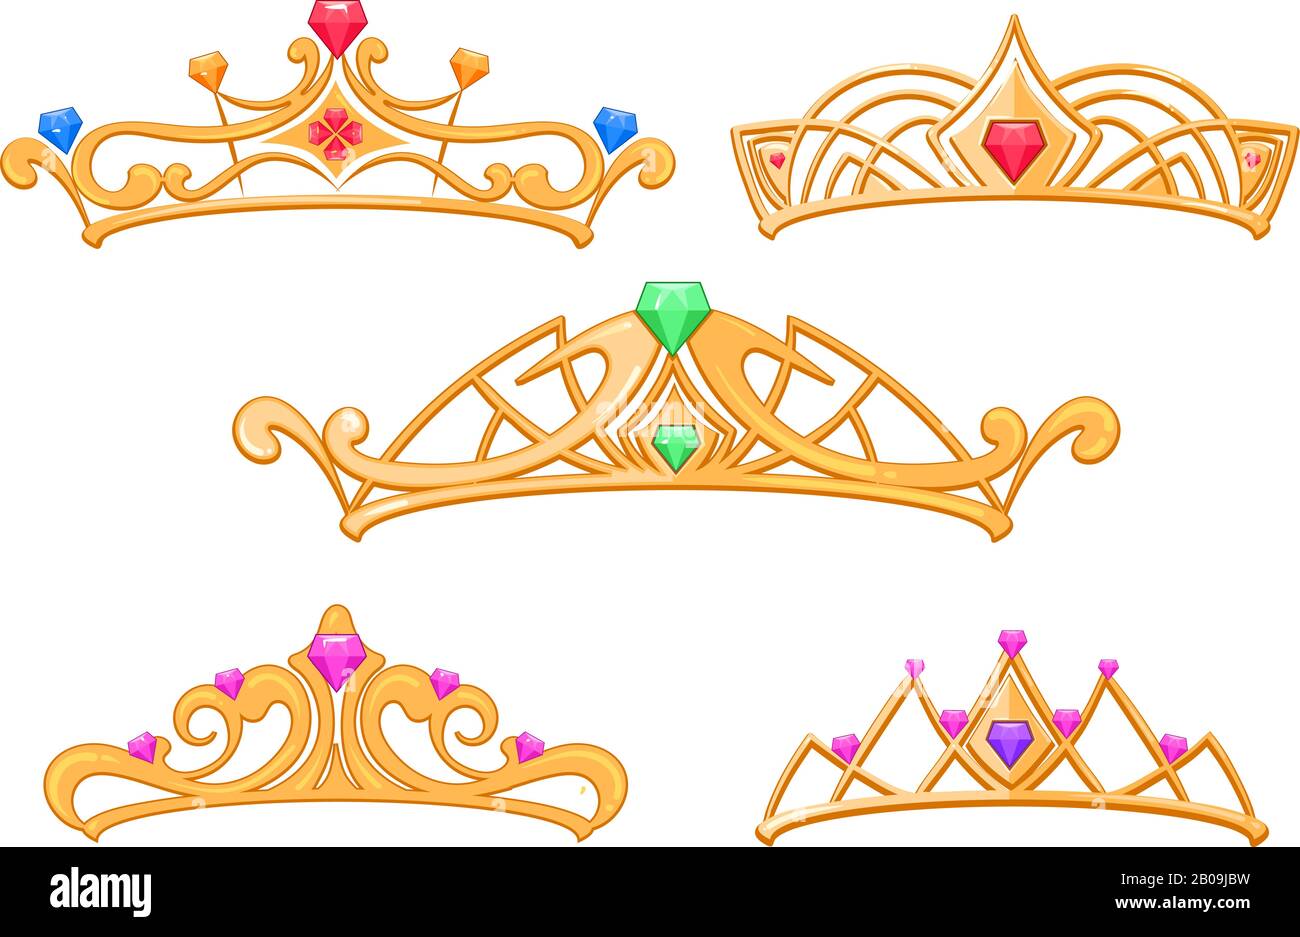 Vector Princess Kronen, Tiaras mit Edelsteinen Cartoon Set. Luxuriöse Königskrone mit Edelstein, Illustration von modischen goldenen Kronen Stock Vektor